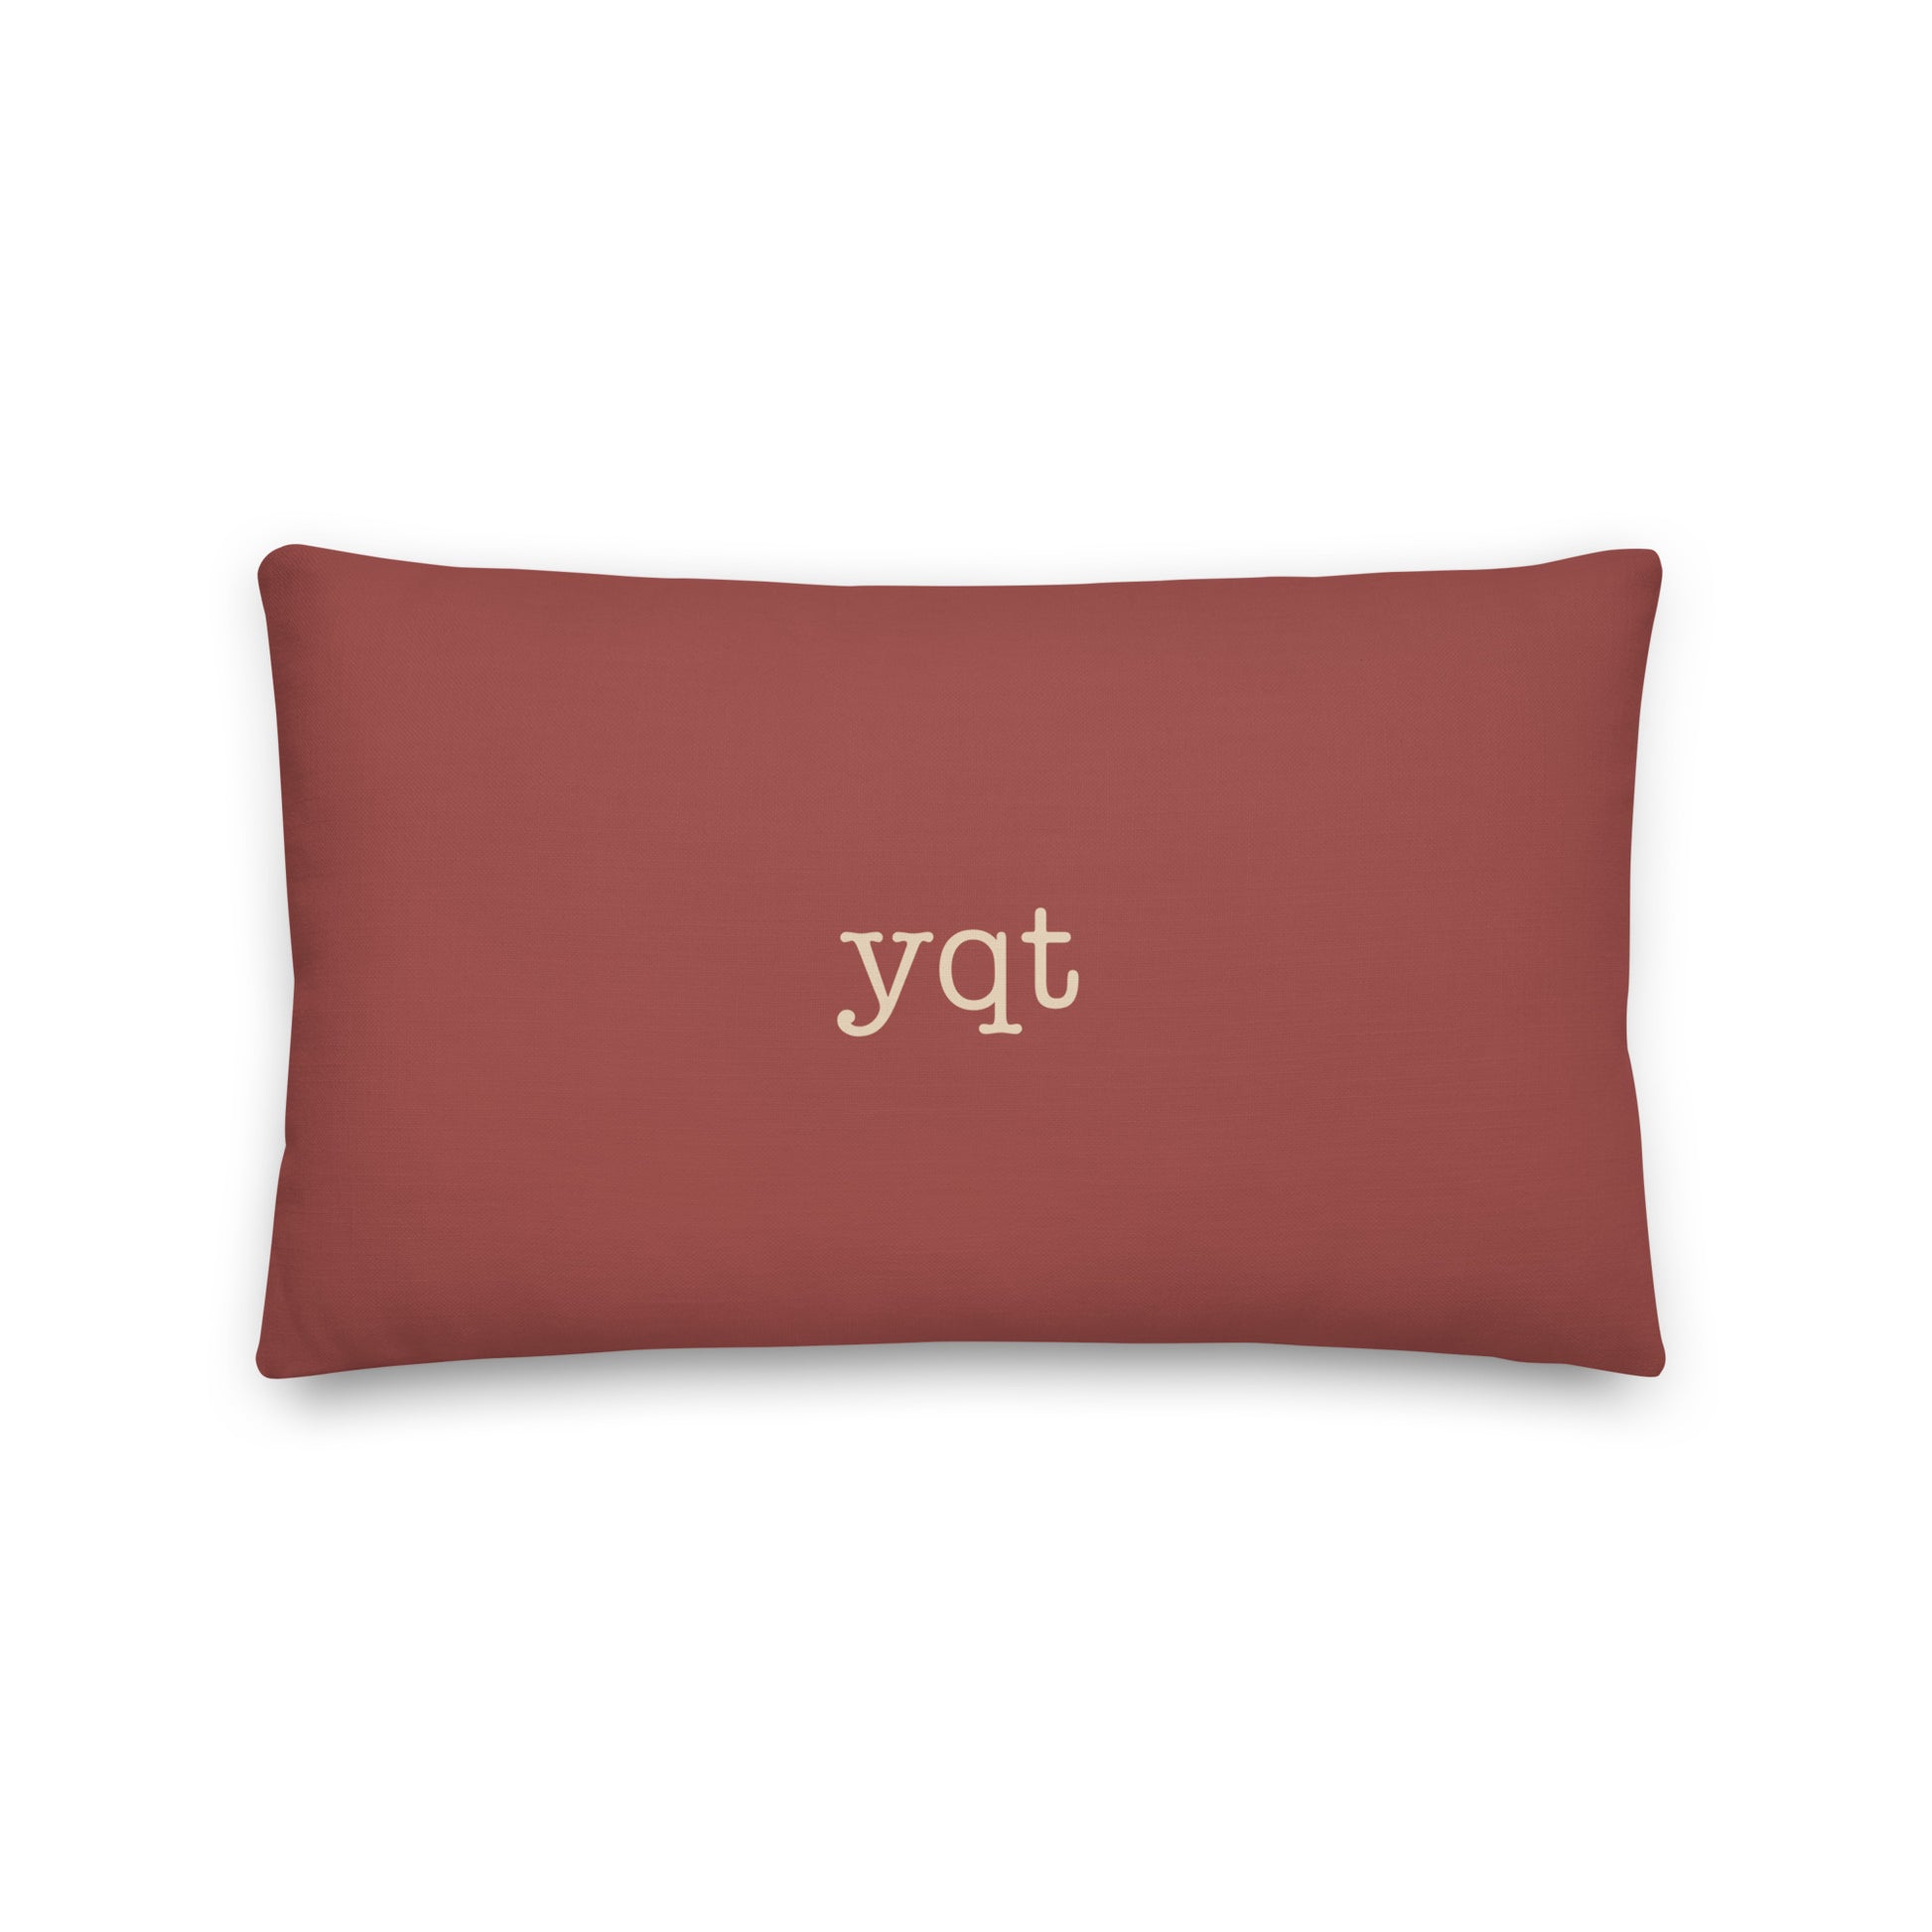 Typewriter Pillow - Terra Cotta • YQT Thunder Bay • YHM Designs - Image 02